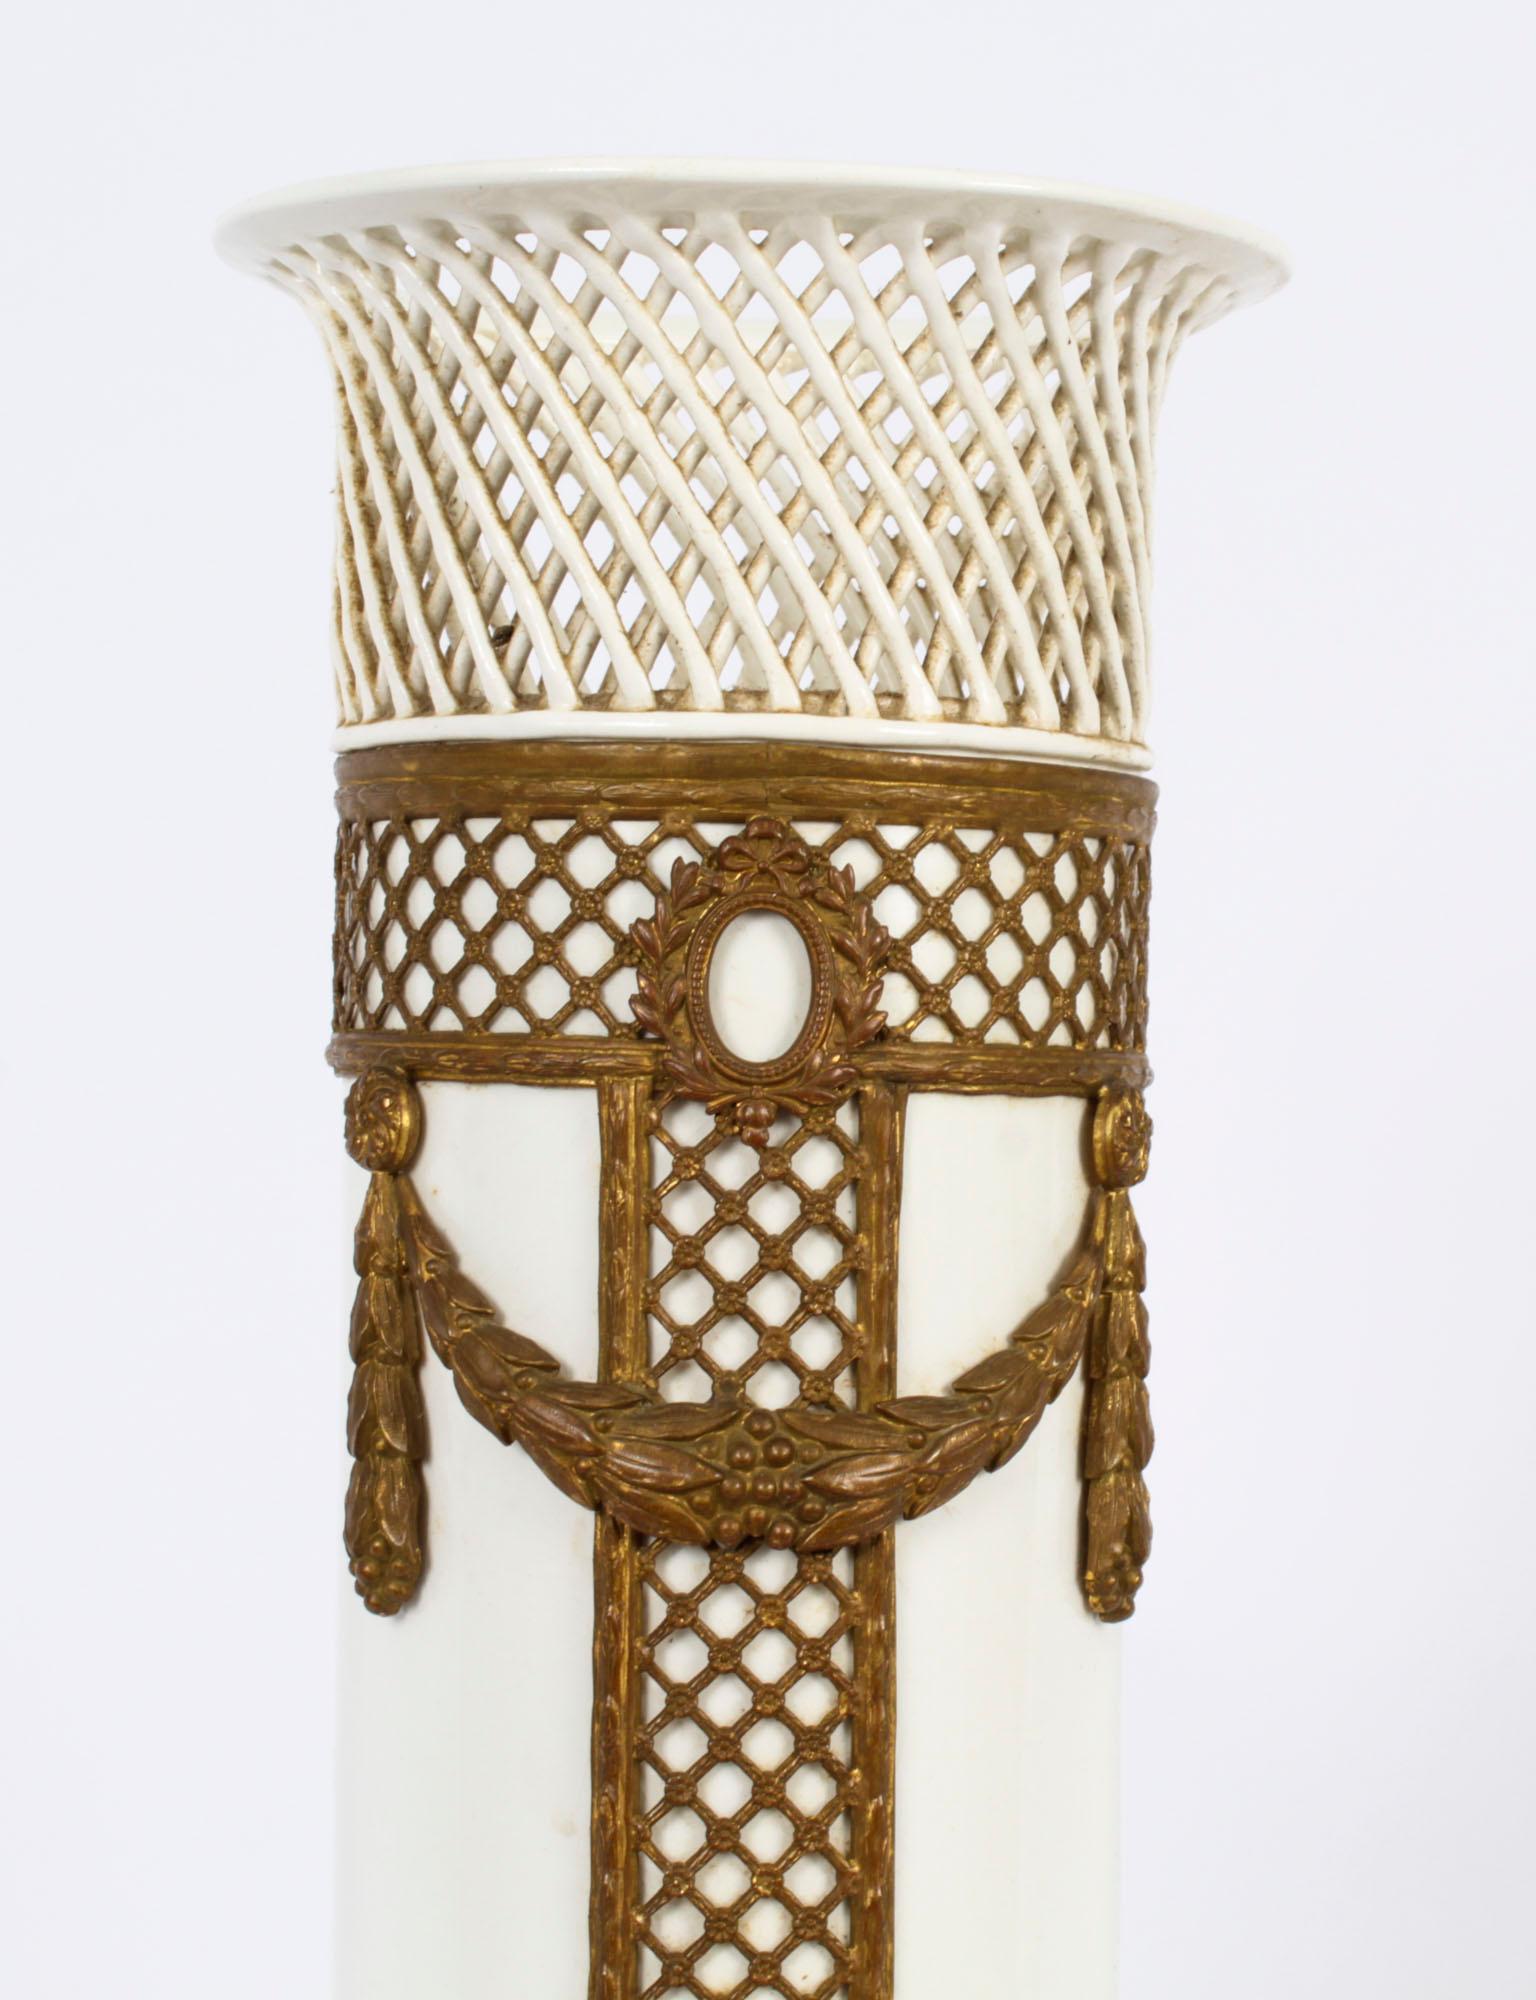 Dies ist ein hervorragendes Porzellan & Ormolu montiert Zell Hammersbach Vase, mit Hersteller Marke und datiert 1882.

Diese Vase stammt aus dem kleinen deutschen Ort Zell am Harmersbach, zwischen Schwarzwald und Rhein gelegen. Diese Stadt blickt